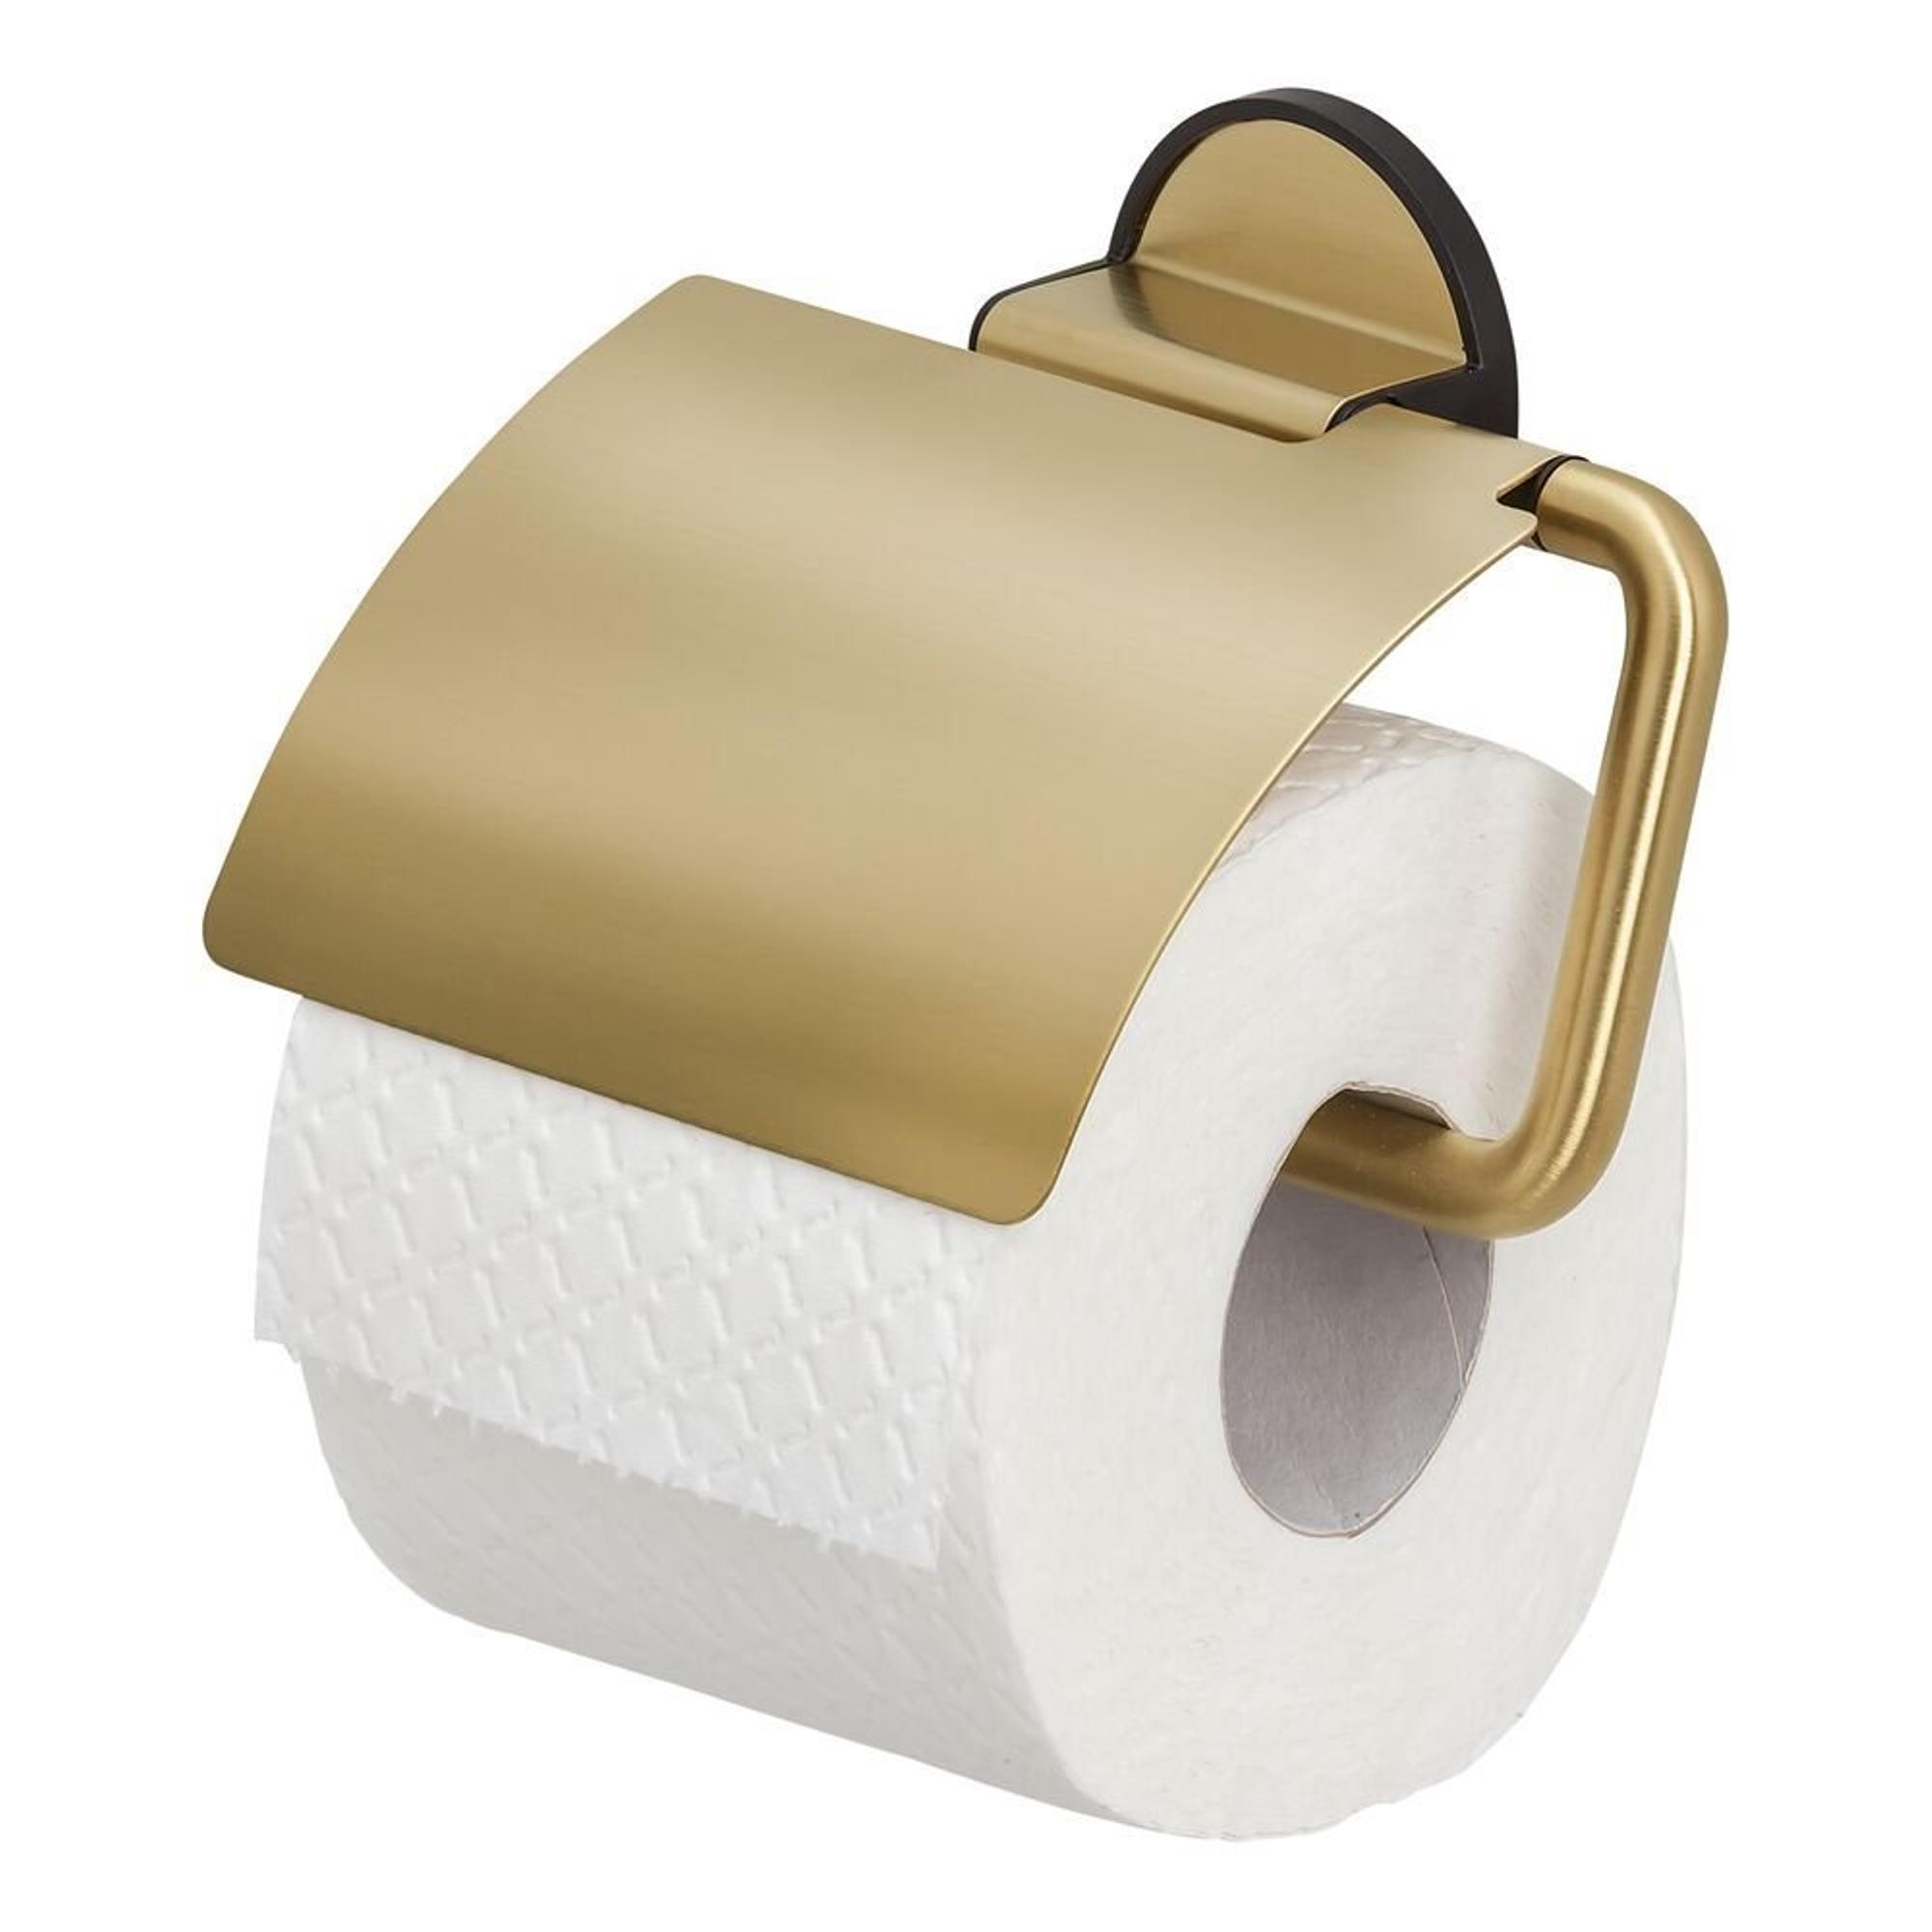 Tiger Tune Porte-rouleau papier toilette avec rabat Laiton brossé / Noir -  1326635646 